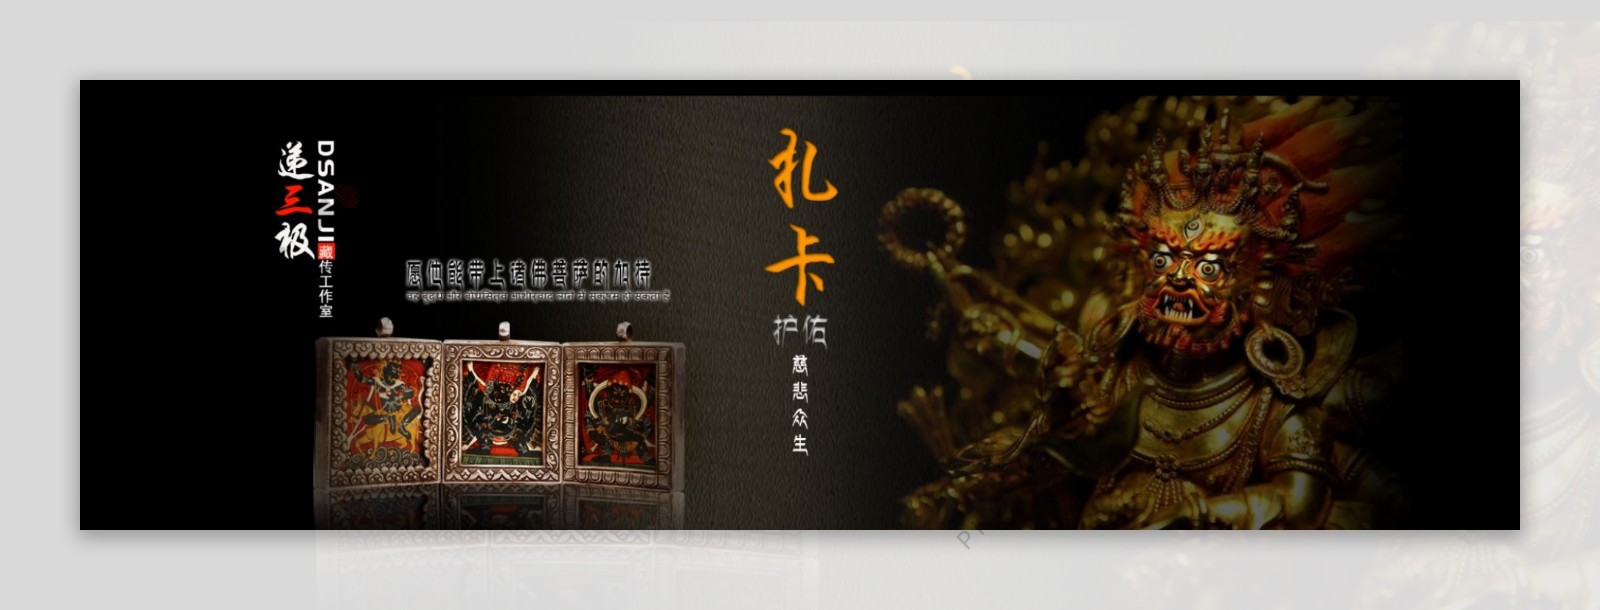 藏文化淘宝通栏海报